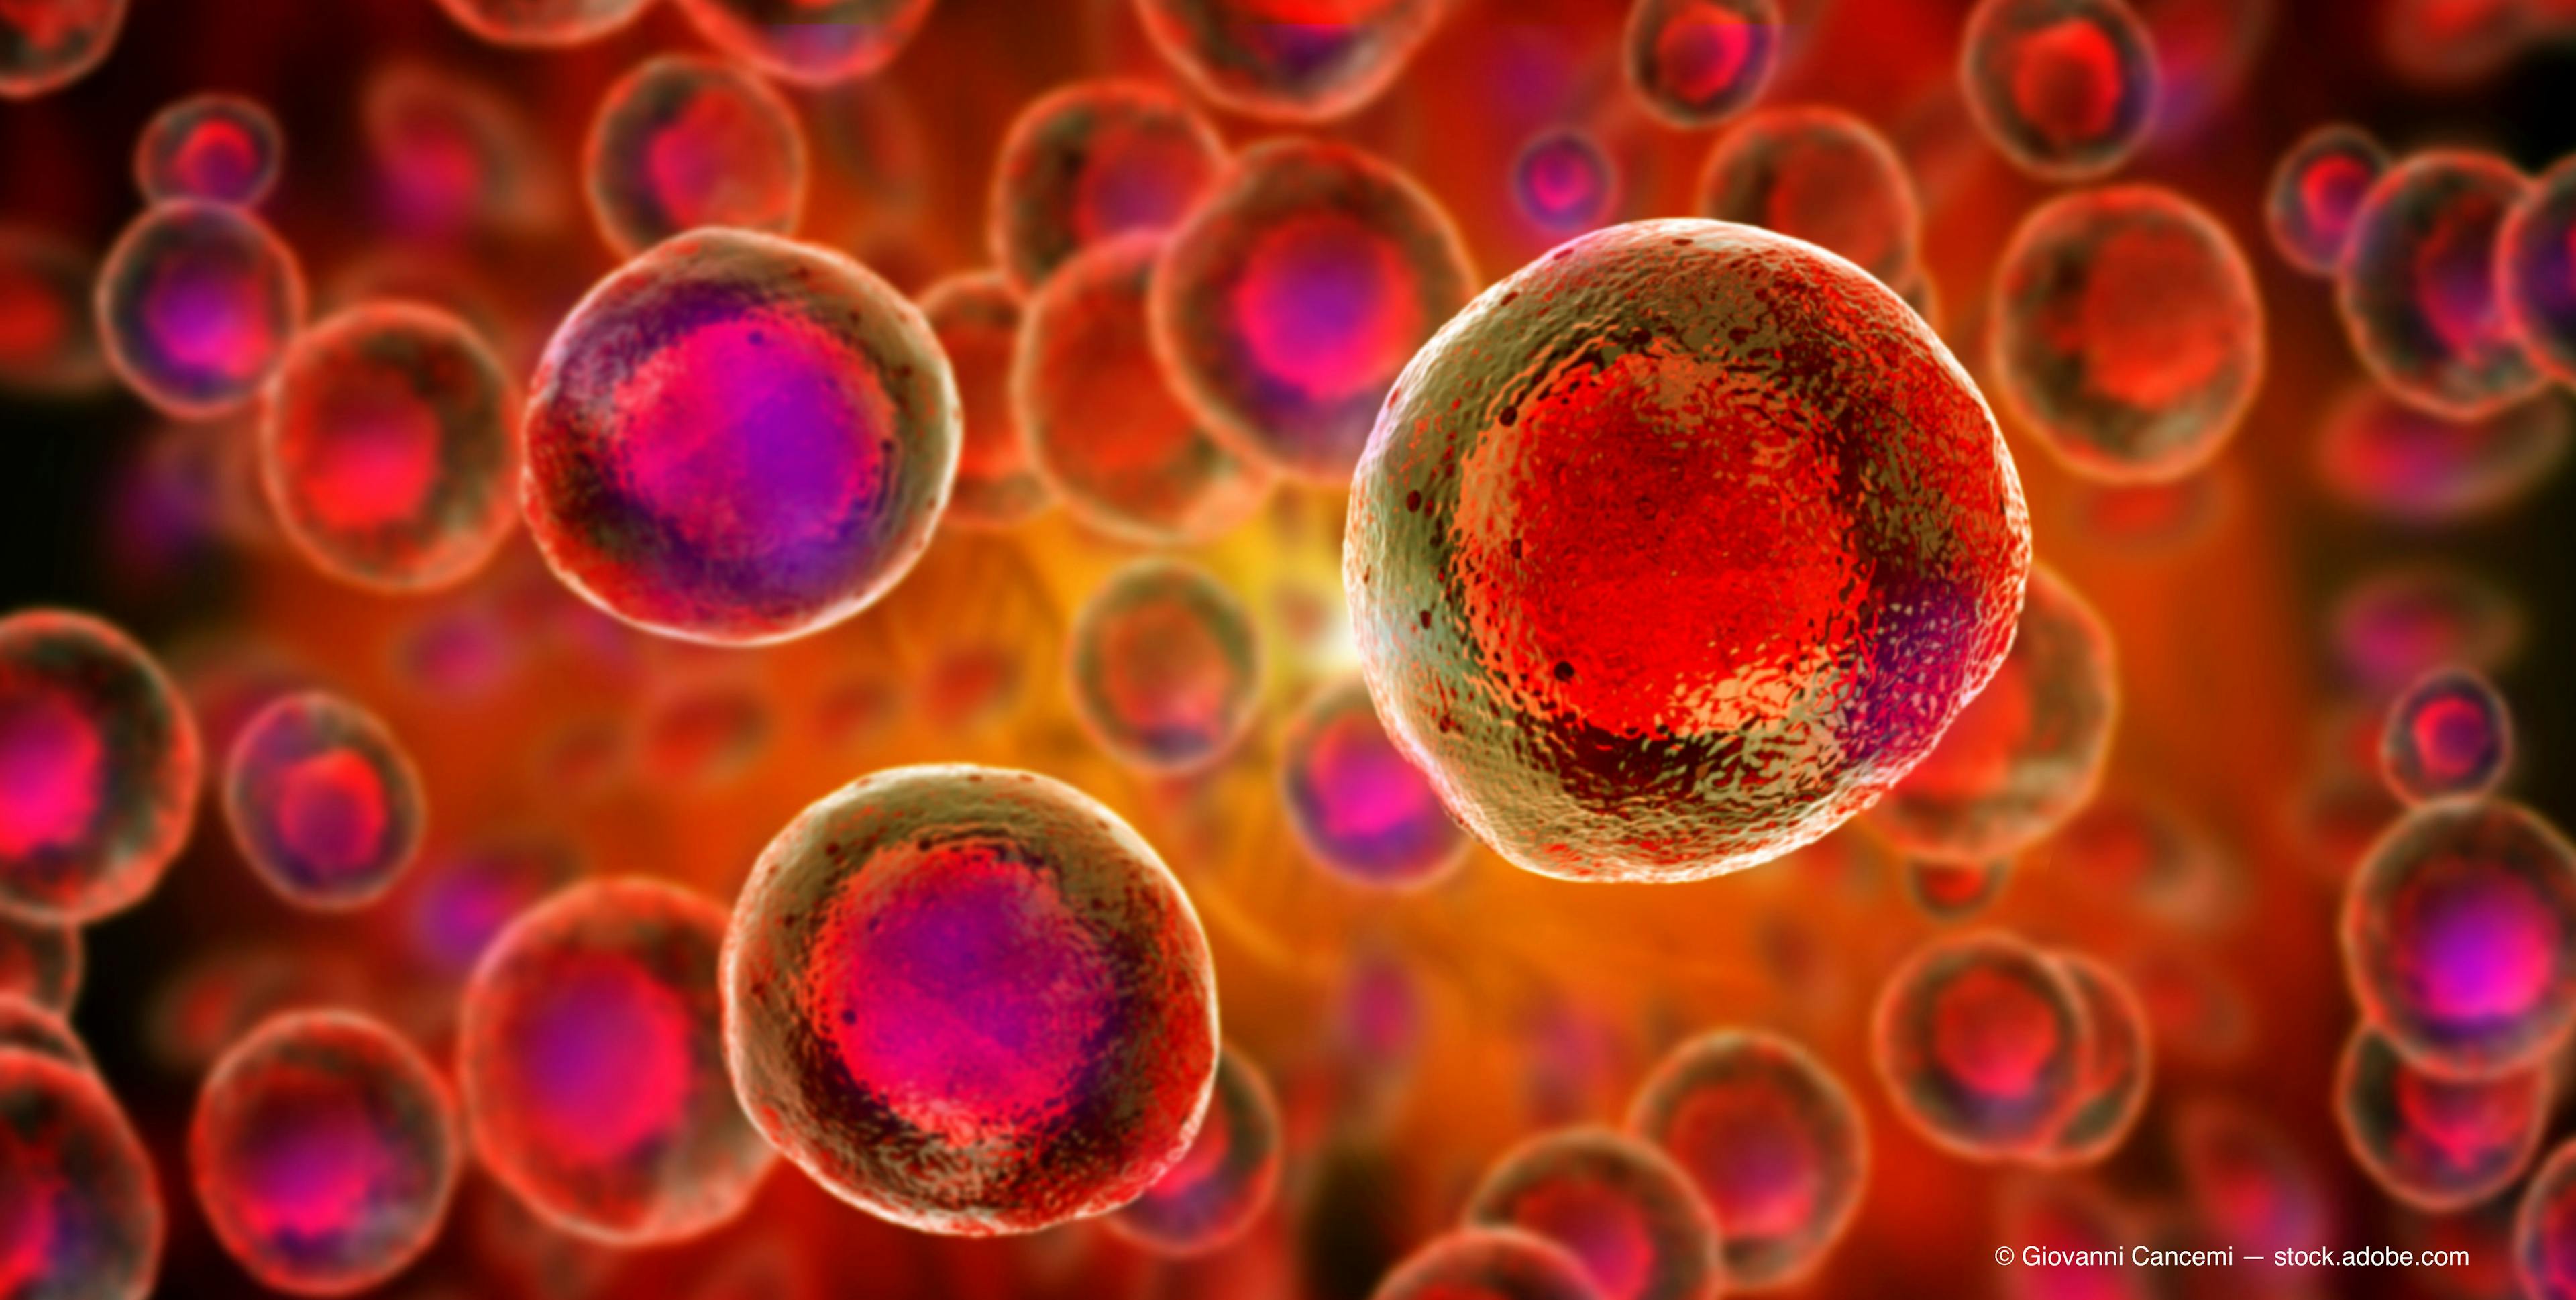 Streamlining stem cells to treat macular degeneration